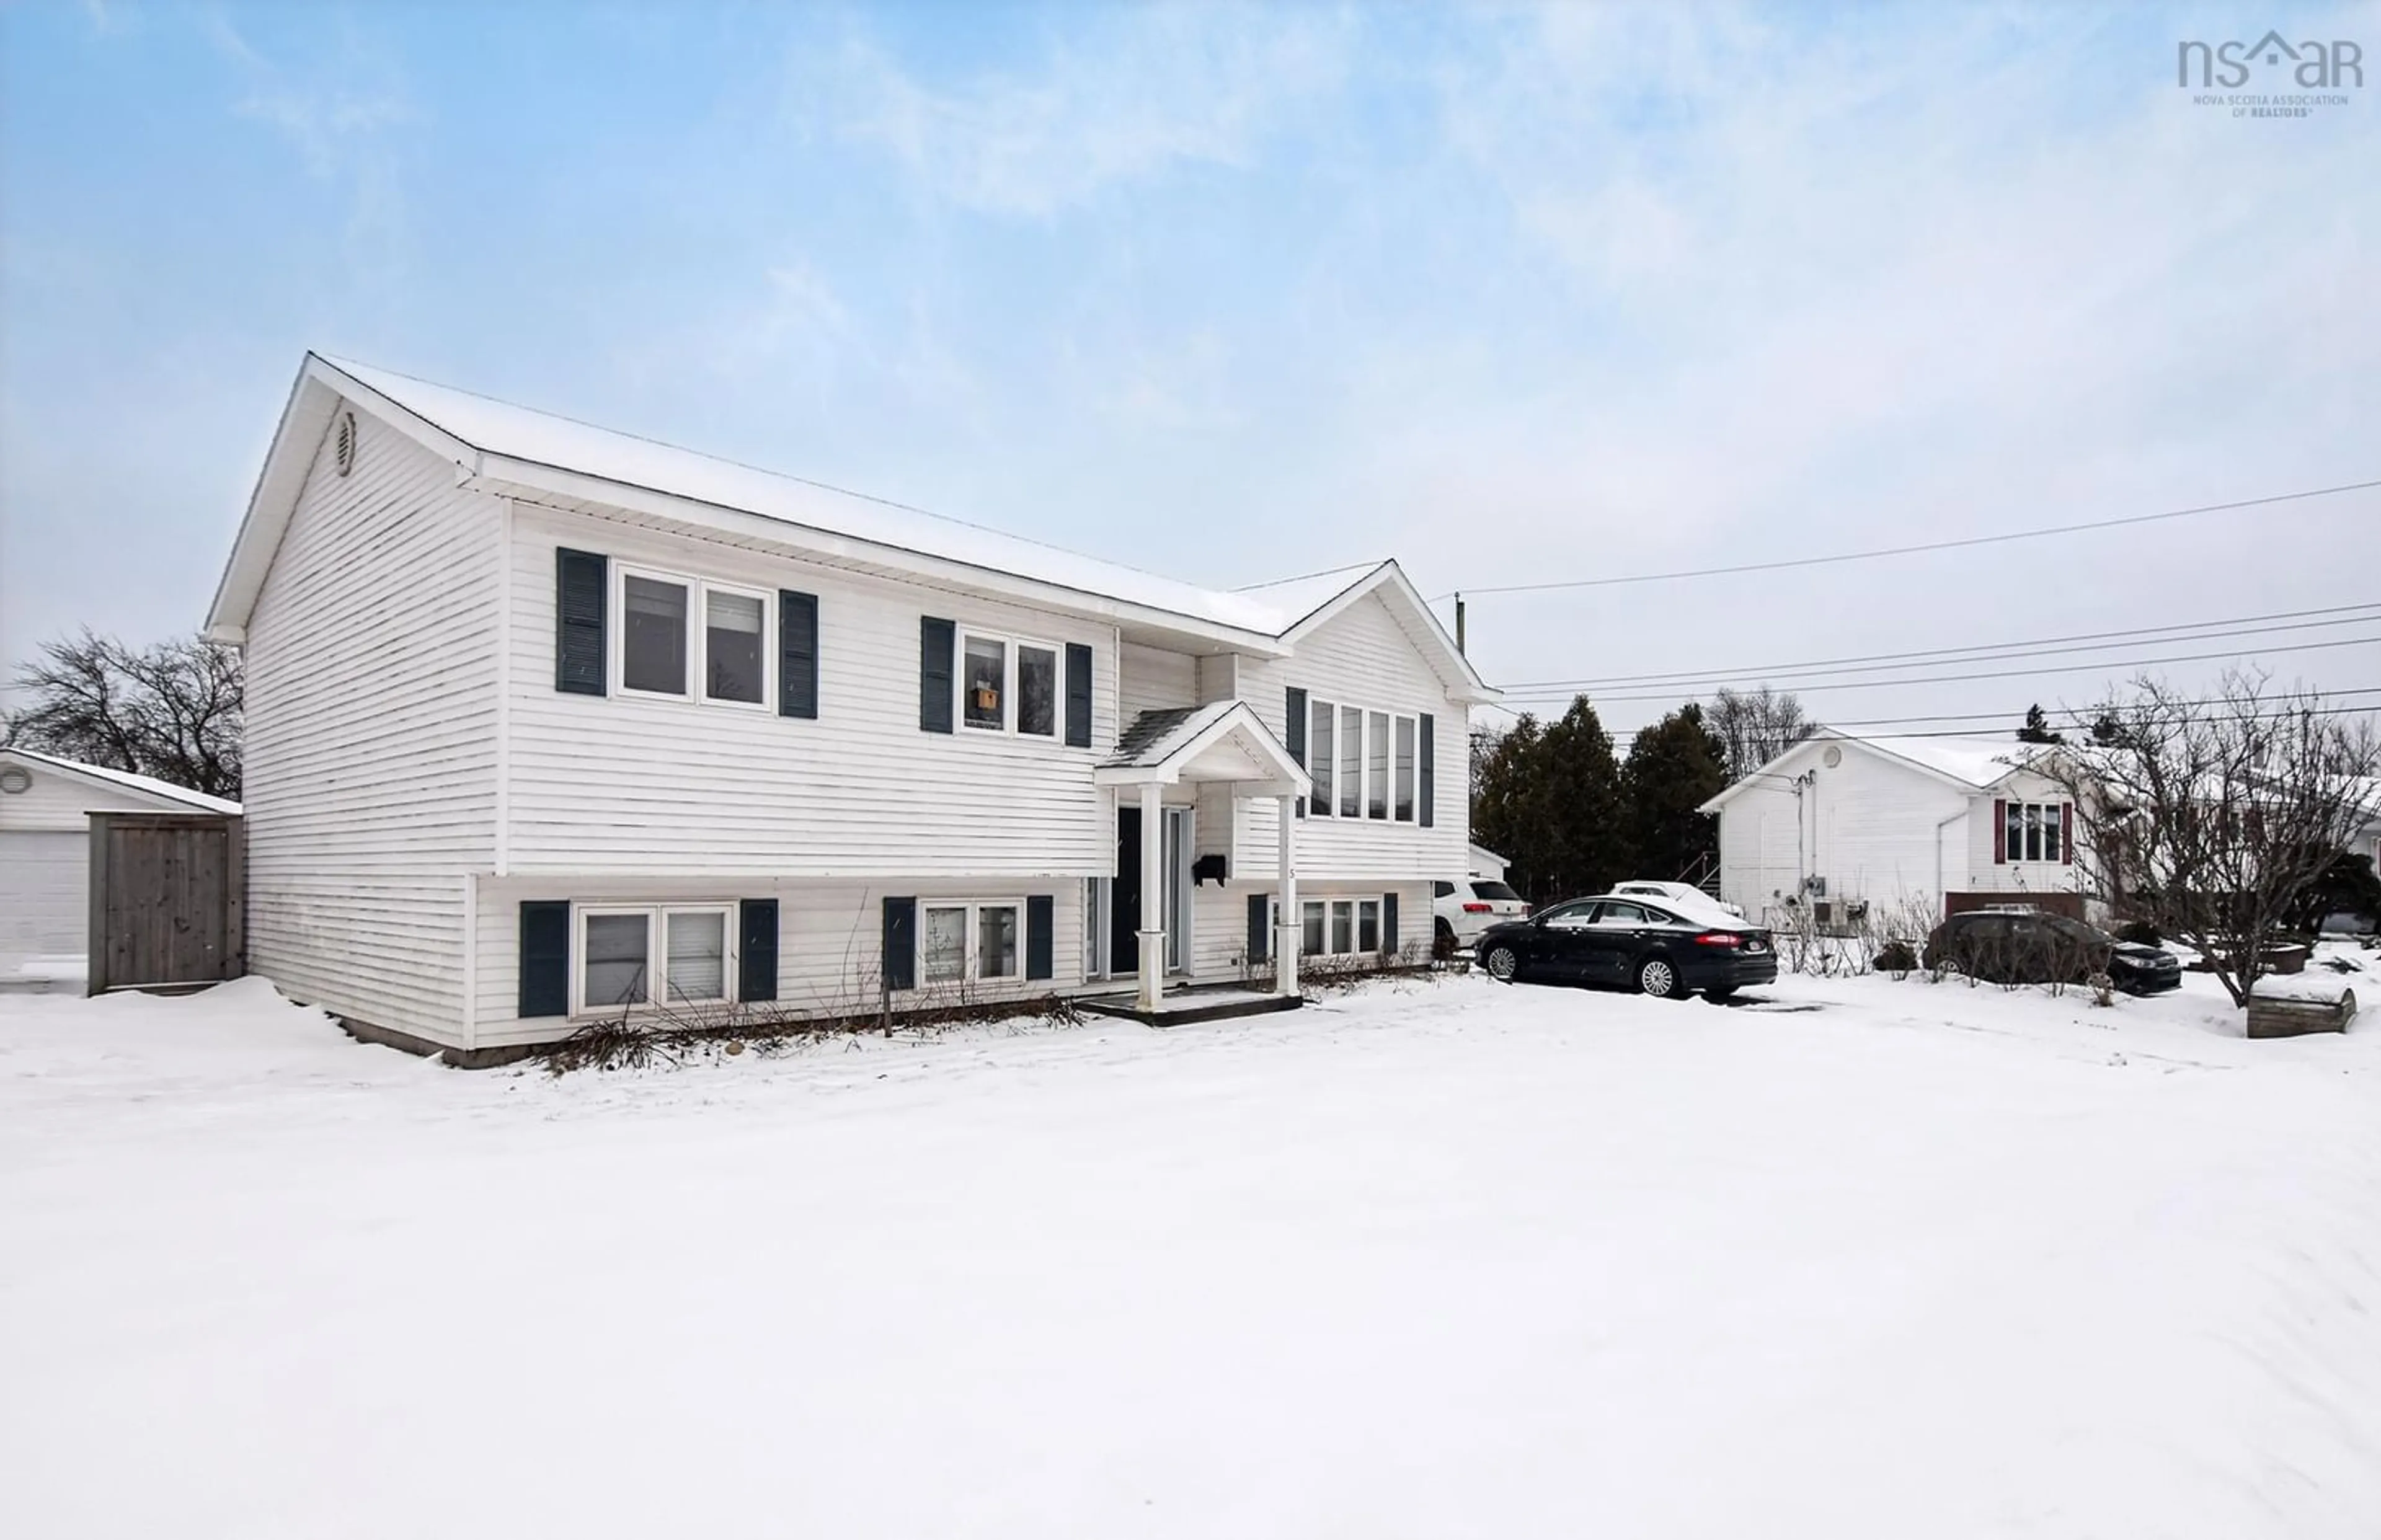 Home with unknown exterior material for 5 Centennial Dr, Antigonish Nova Scotia B2G 2V6